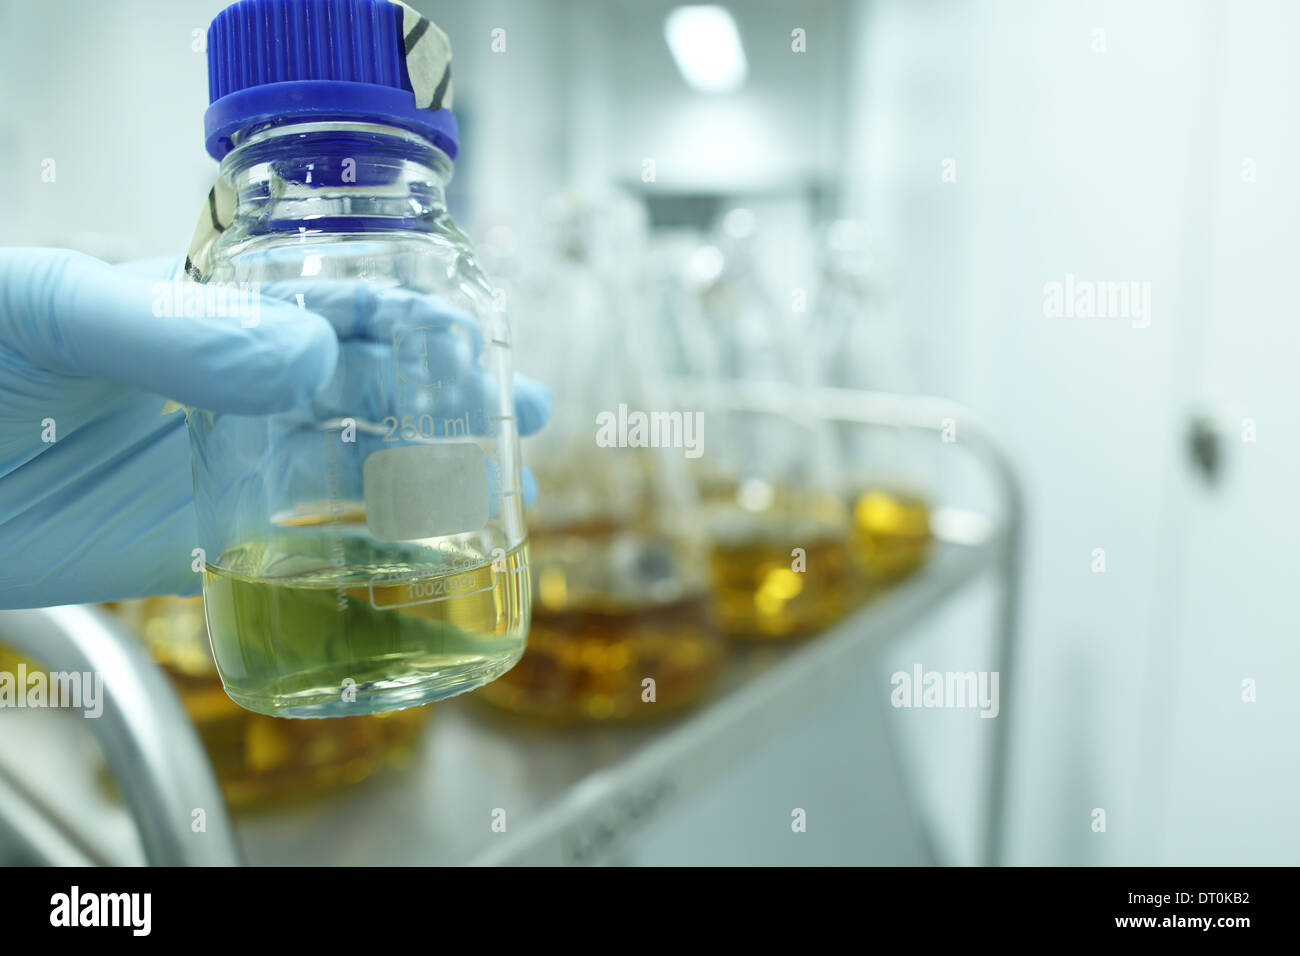 Moyens flacons stériles biologique dans un laboratoire de recherche Banque D'Images